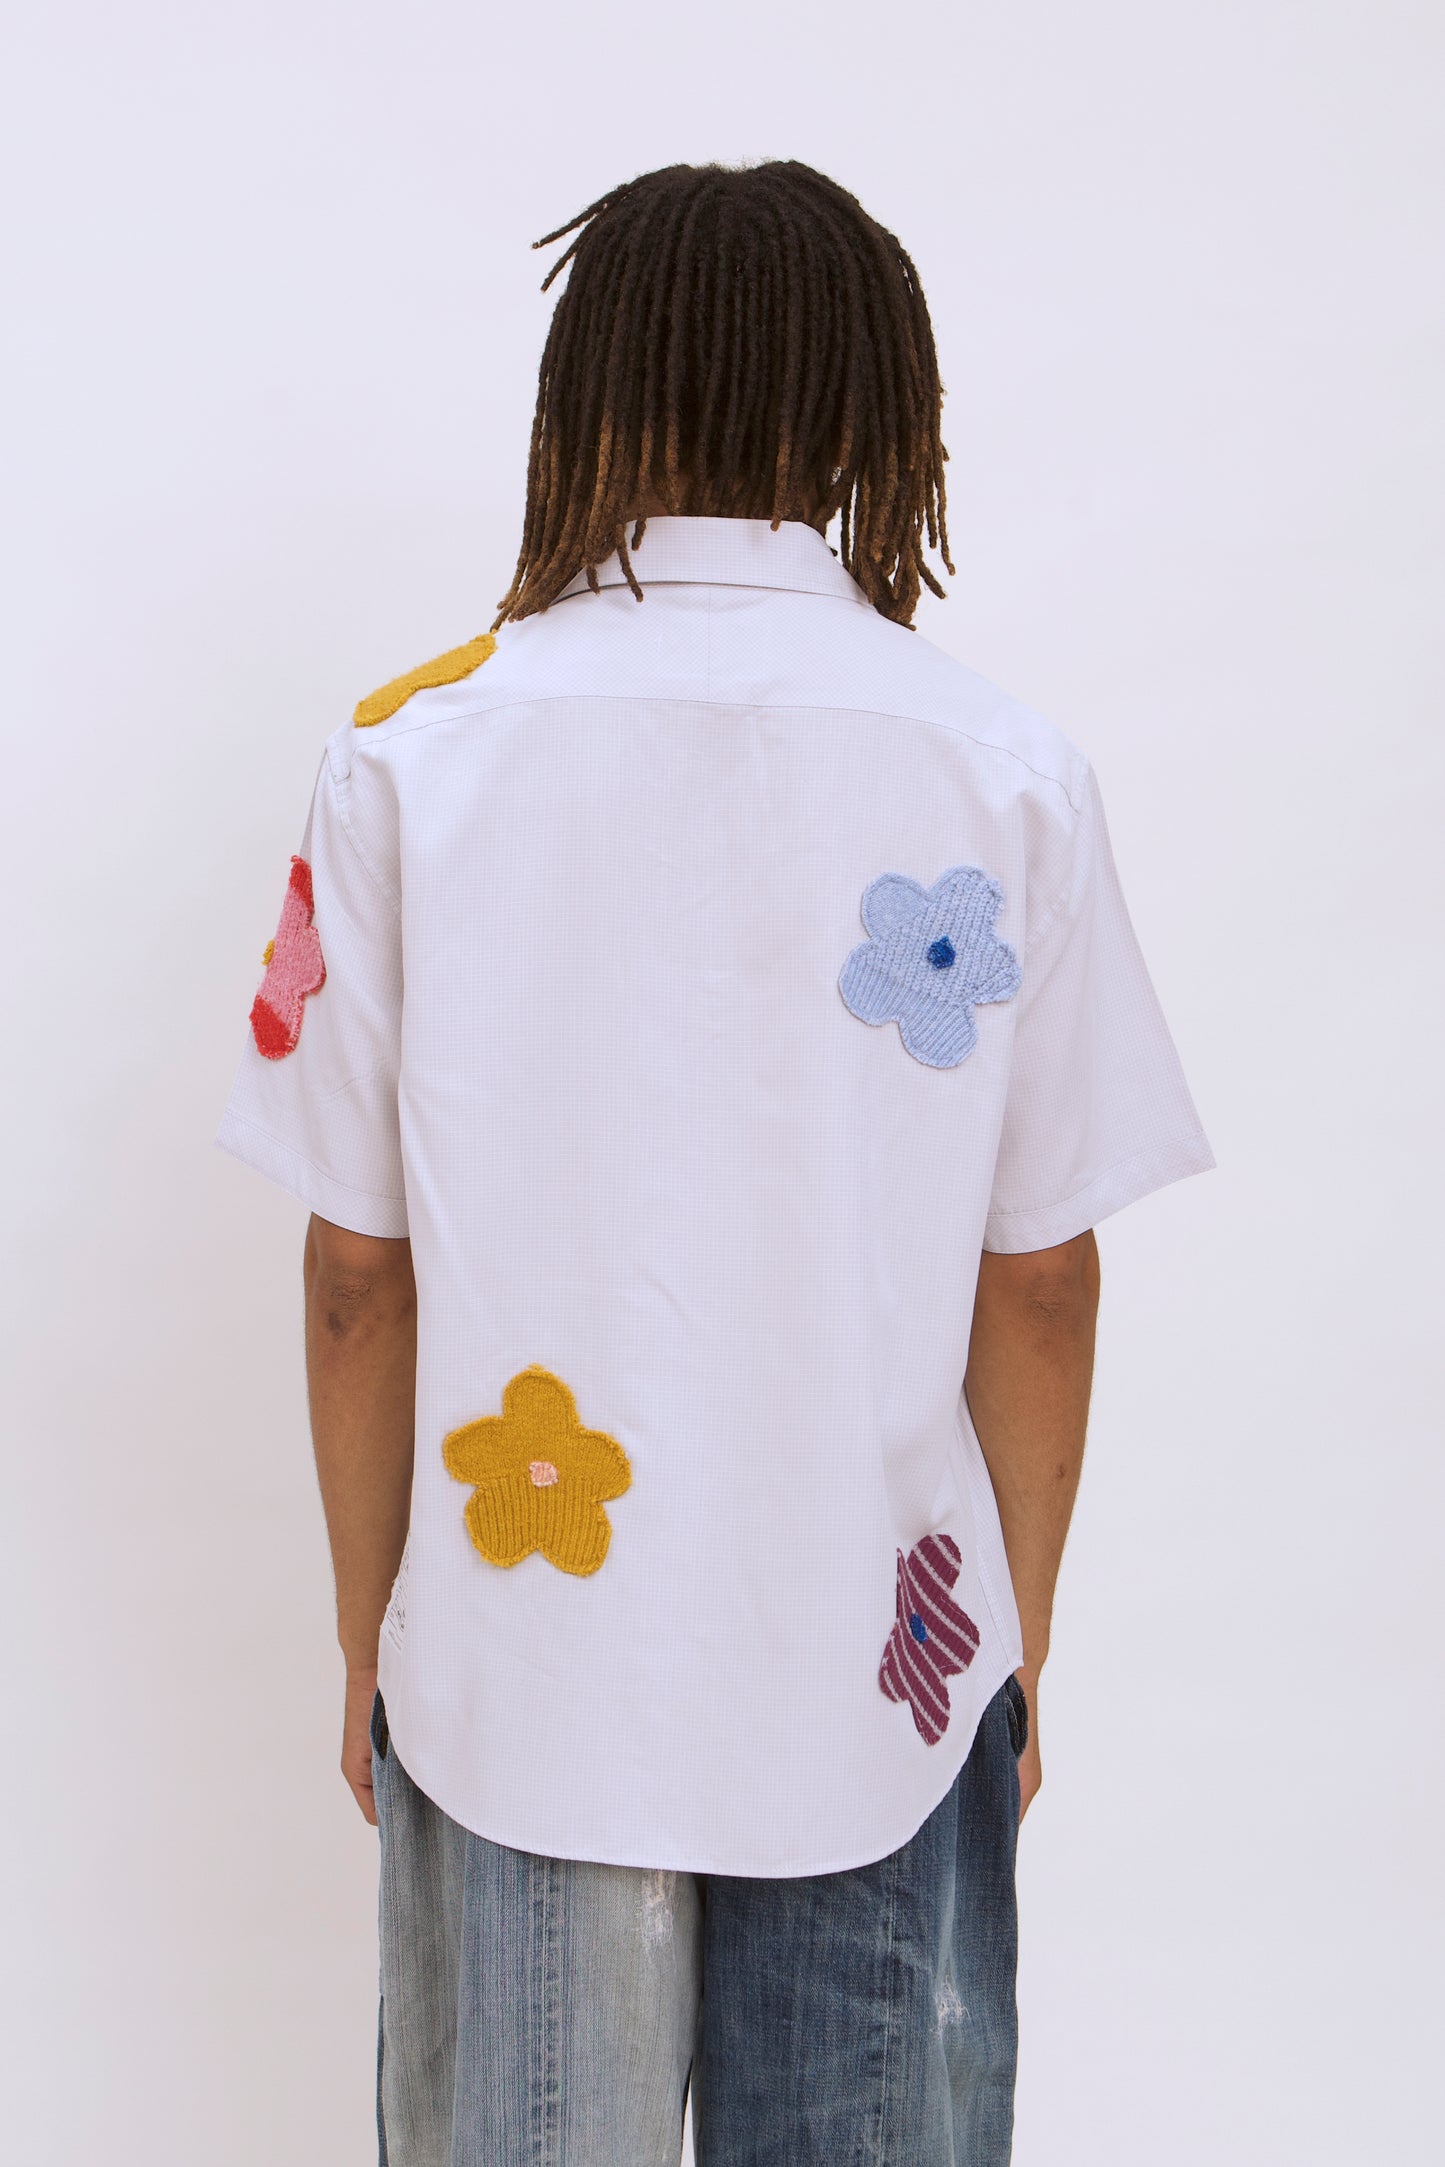 Flower Shirt 013 - L